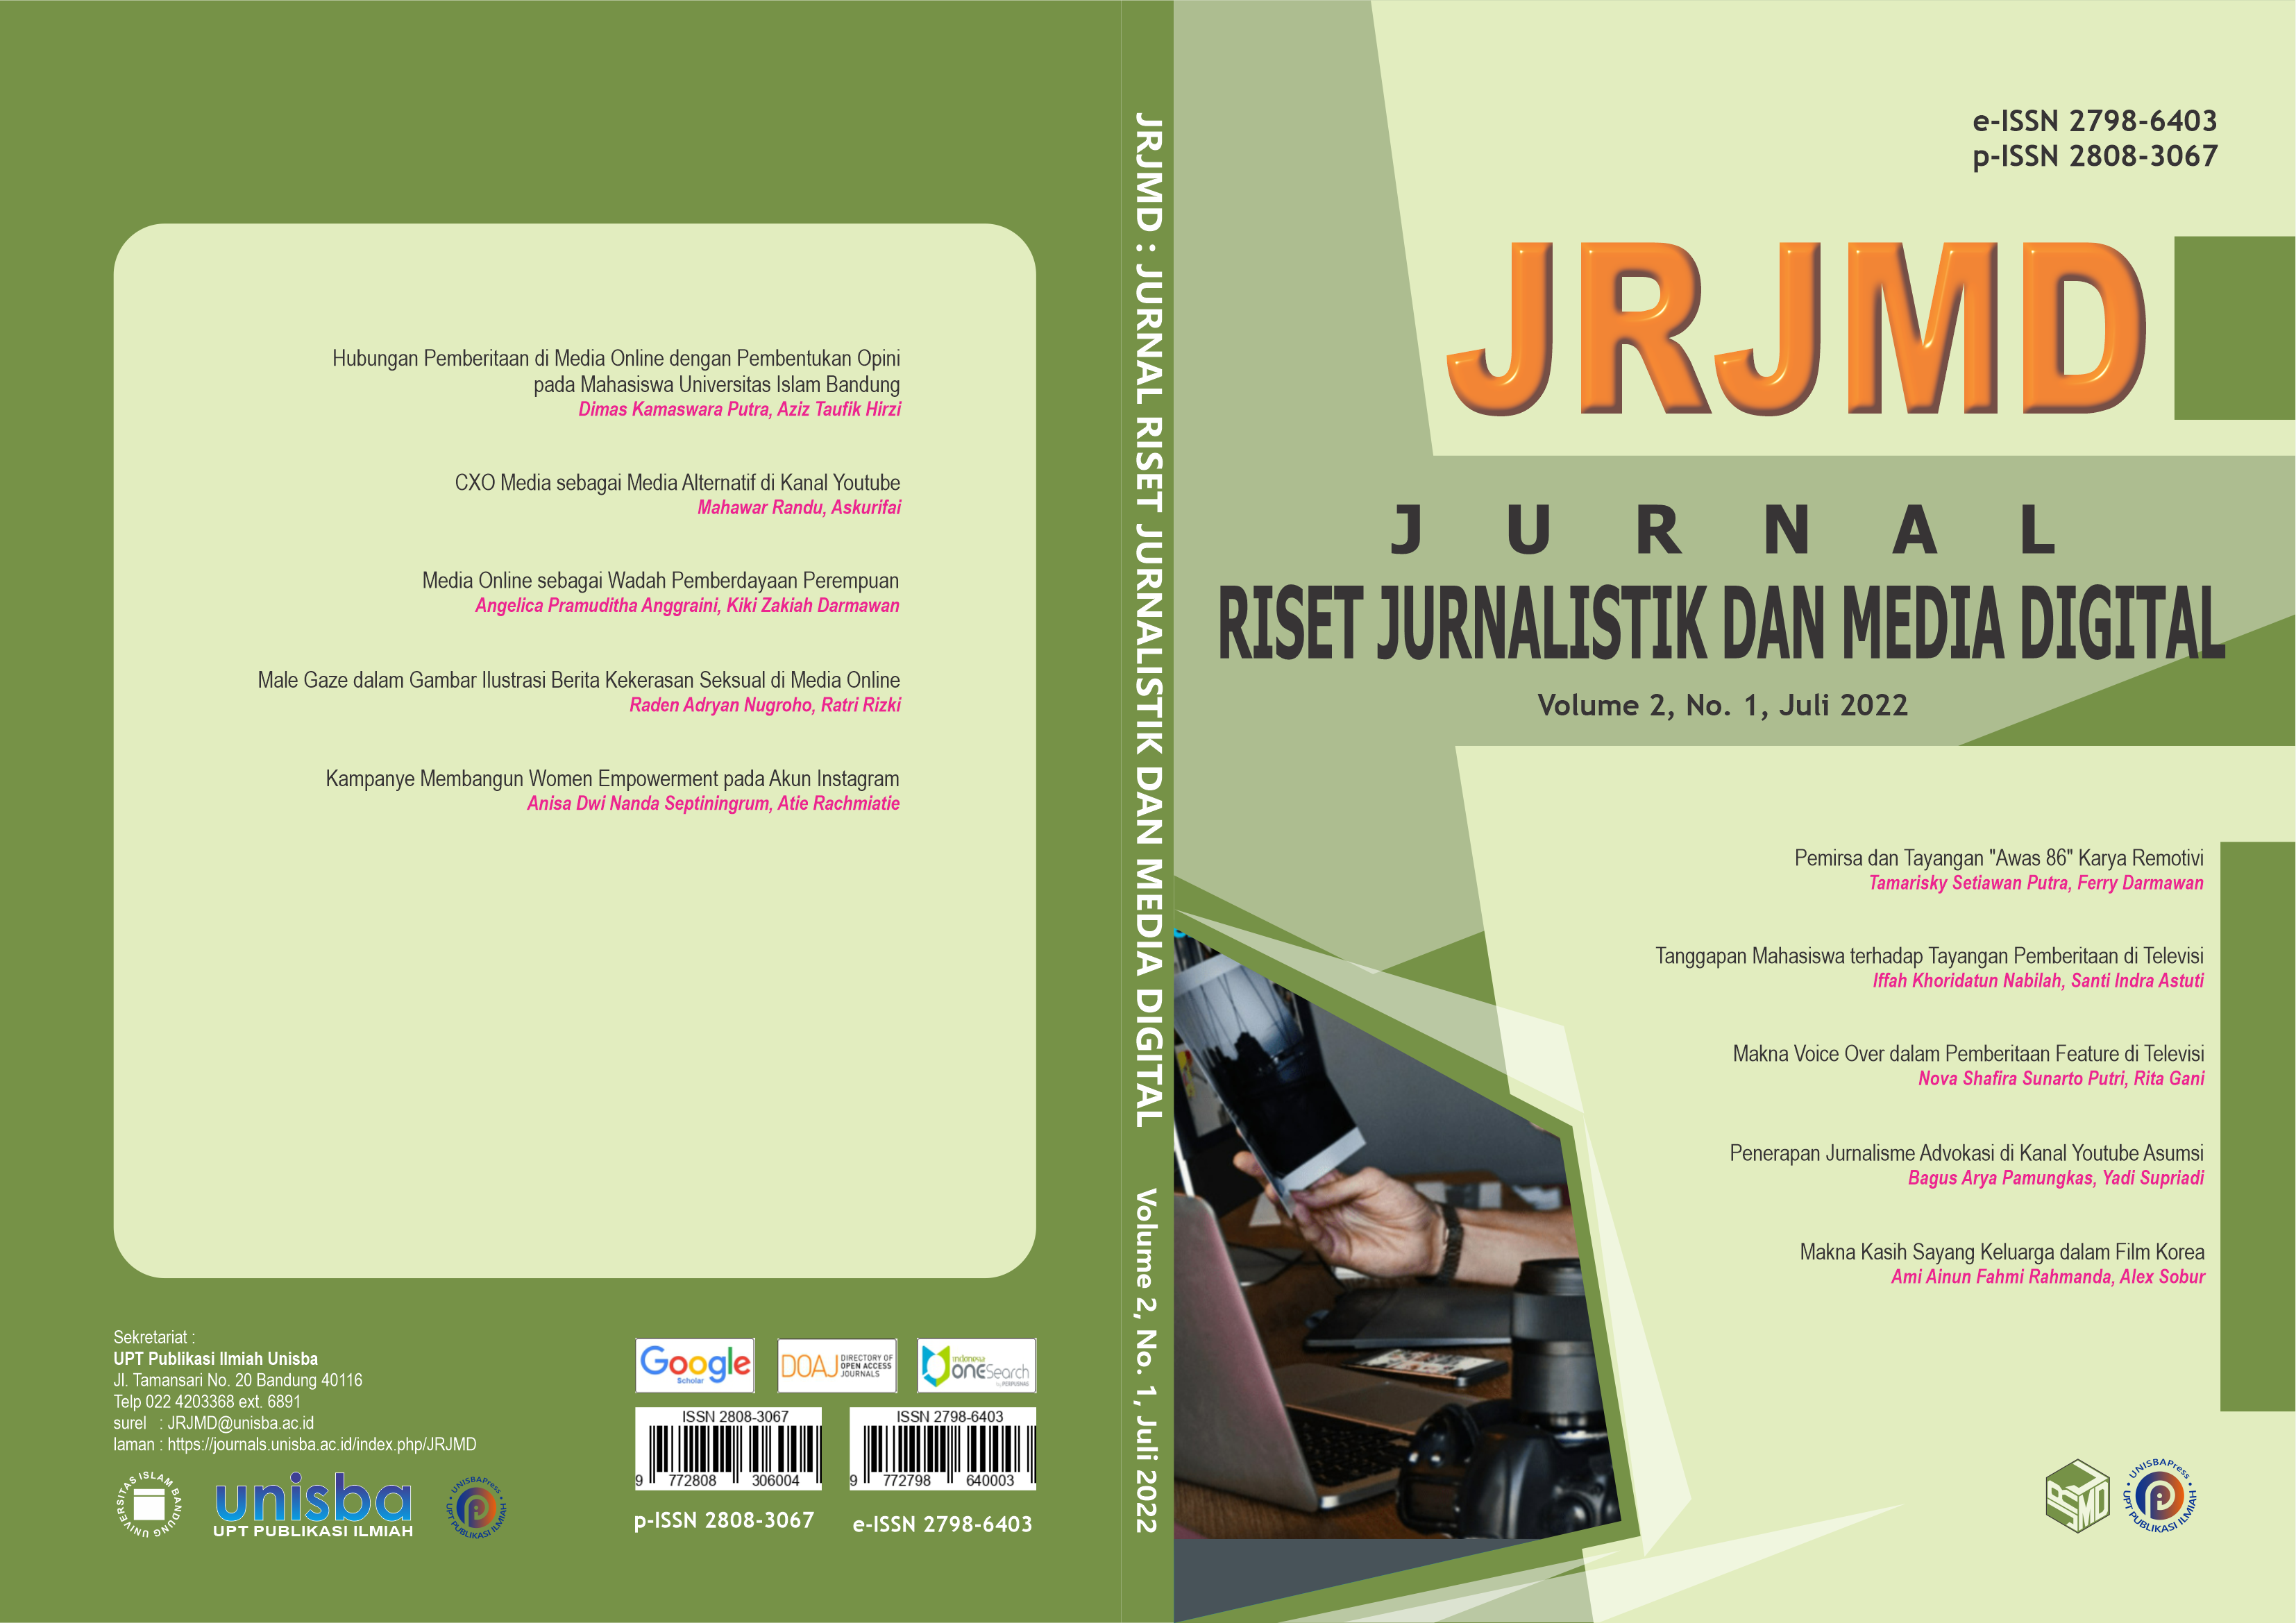 					View Volume 2, No. 1, Juli 2022 Jurnal Riset Jurnalistik dan Media Digital (JRJMD)
				